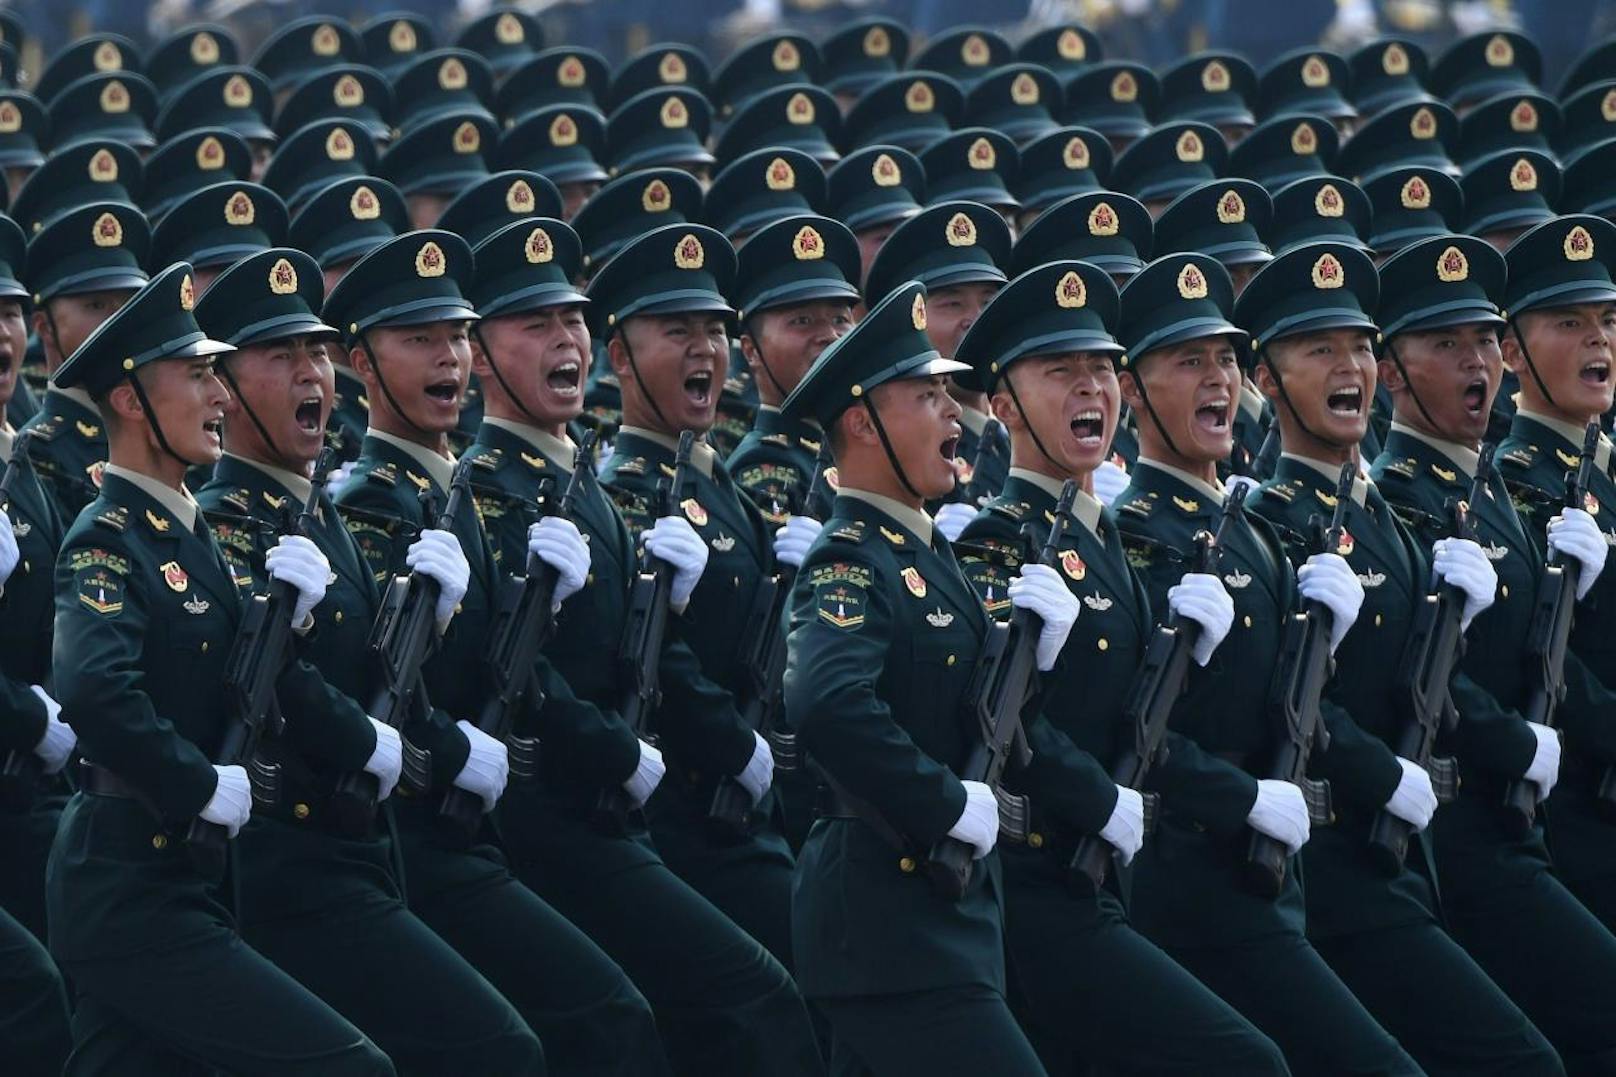 Mit der Militärschau will die kommunistische Führung nach Einschätzung von Experten militärische Stärke, ihren absoluten Machtanspruch und internationalen Gestaltungswillen demonstrieren.
